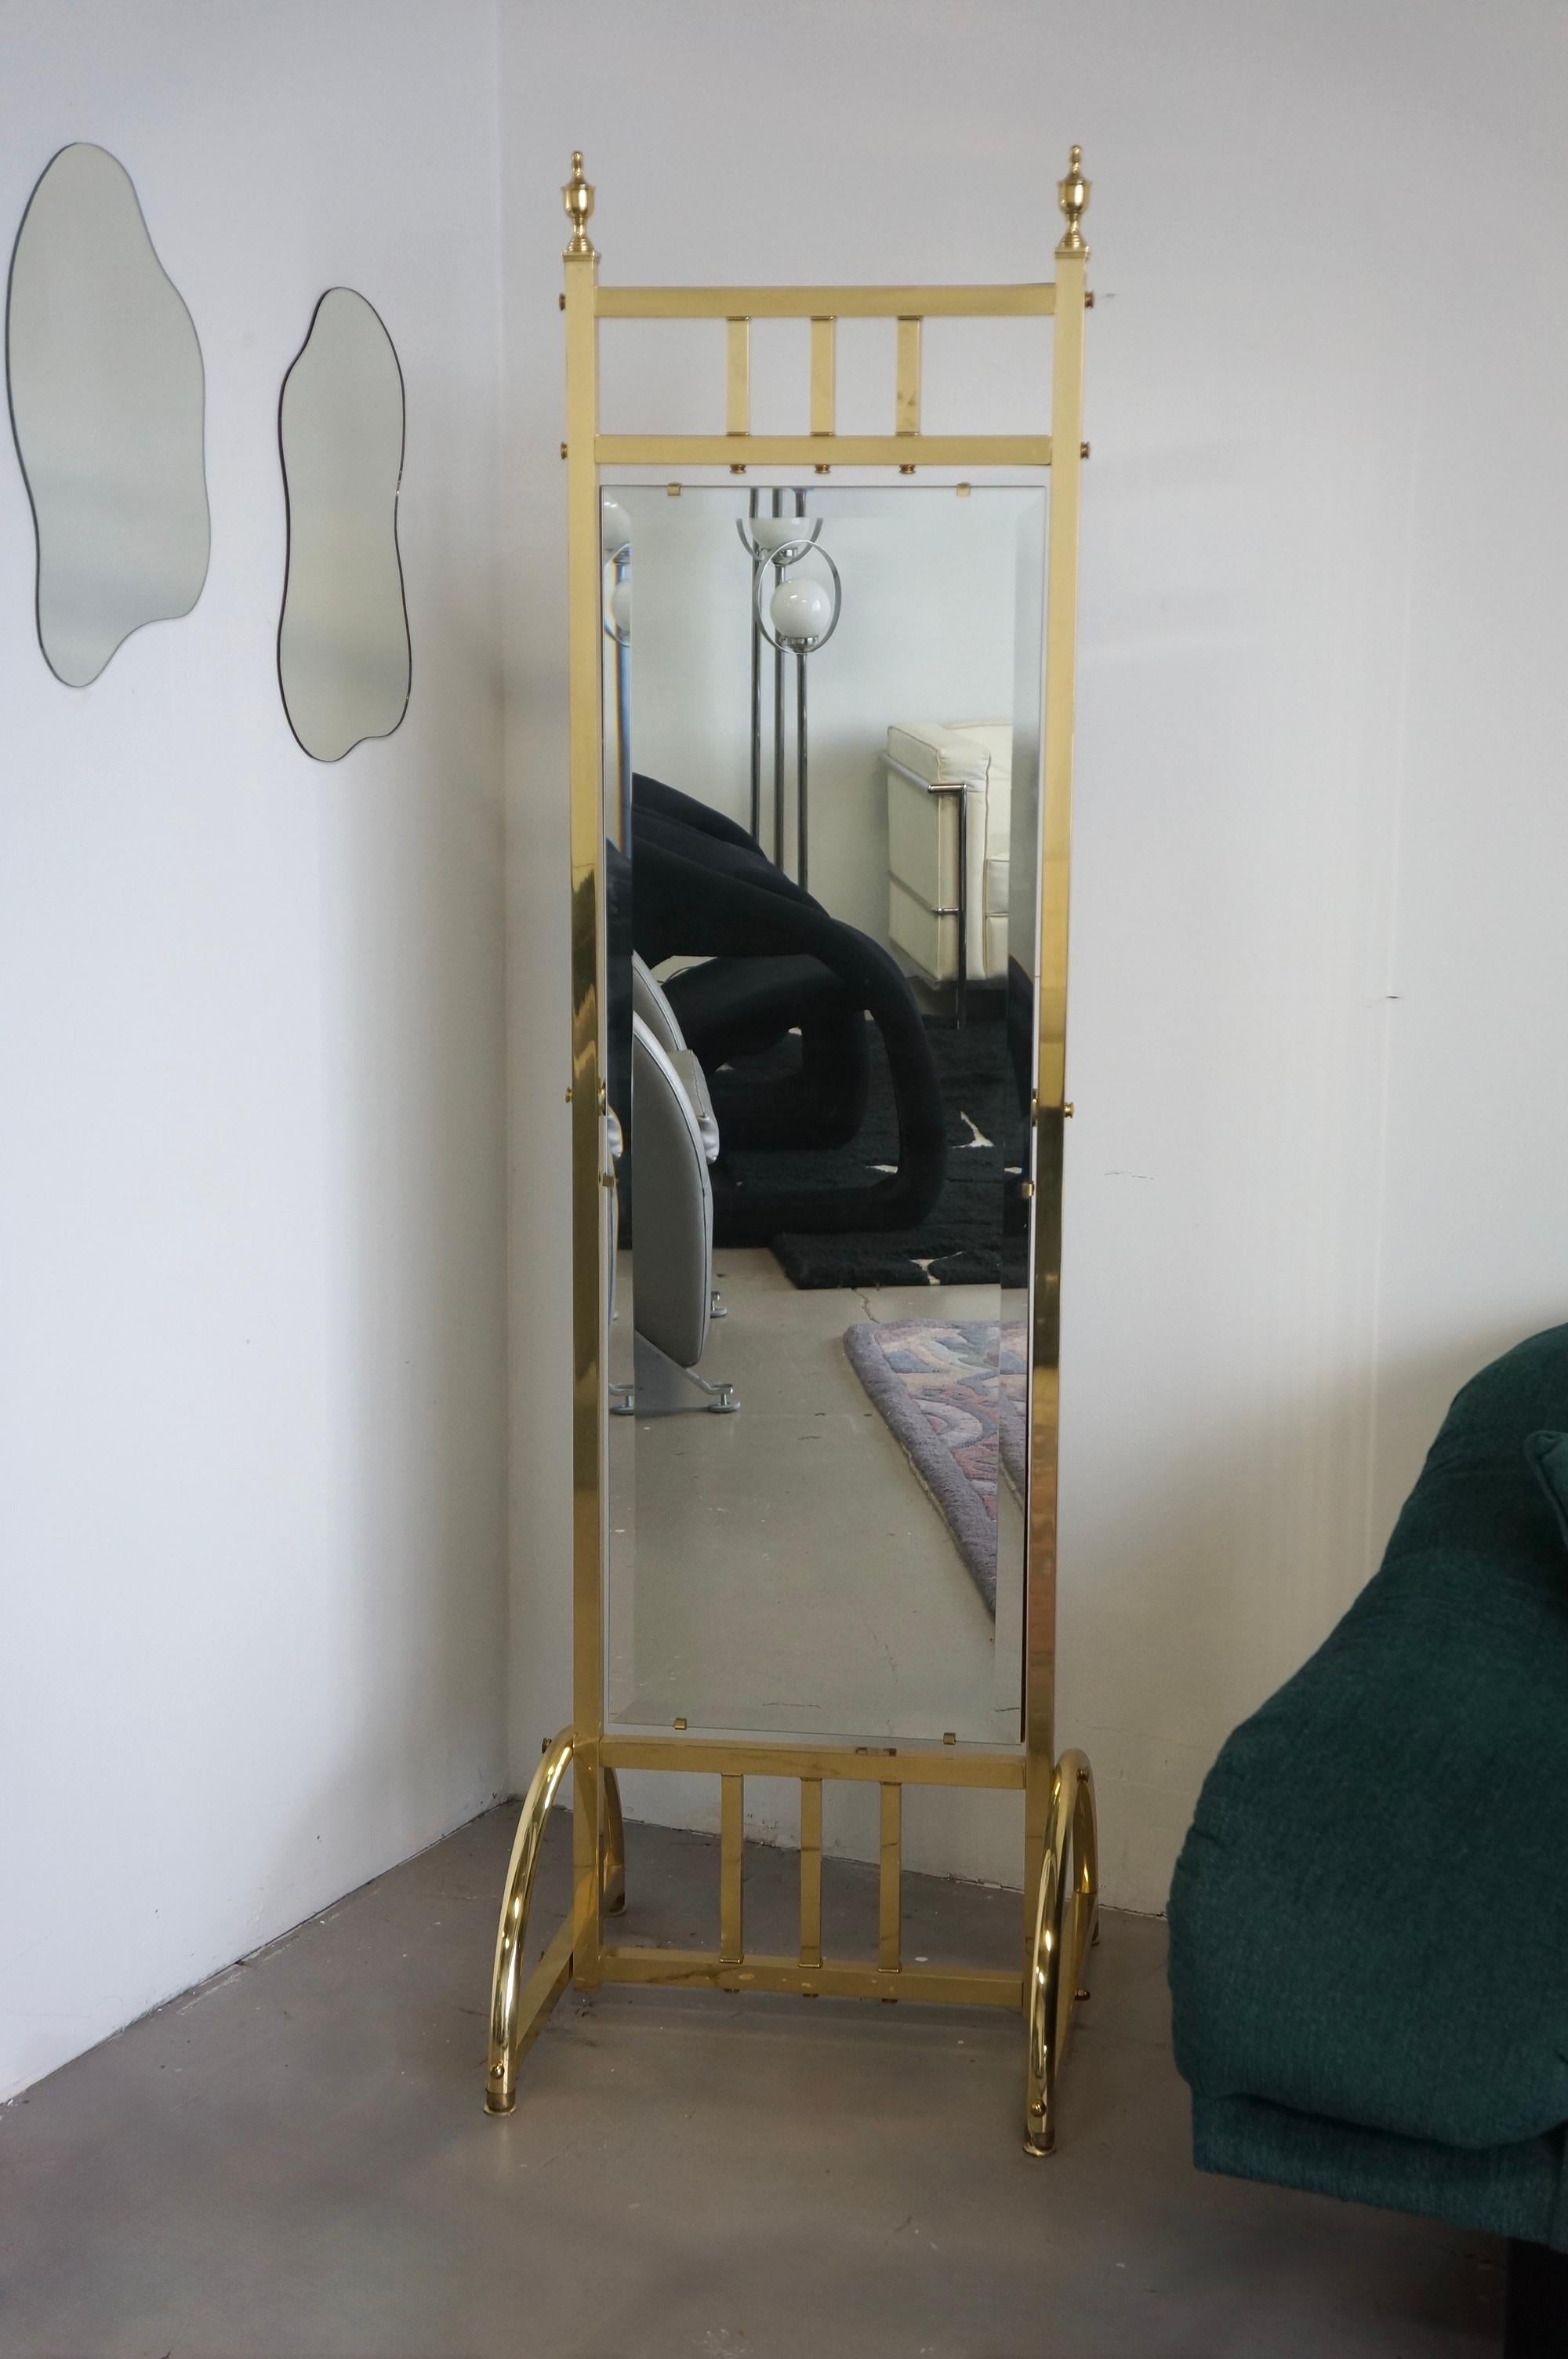 Magnifique miroir sur pied en laiton de style Hollywood regency. Ce miroir a un corps en laiton avec un miroir biseauté qui est maintenu par un support en bois. Les détails sont magnifiques, comme les couronnes sur les coins supérieurs. Le miroir